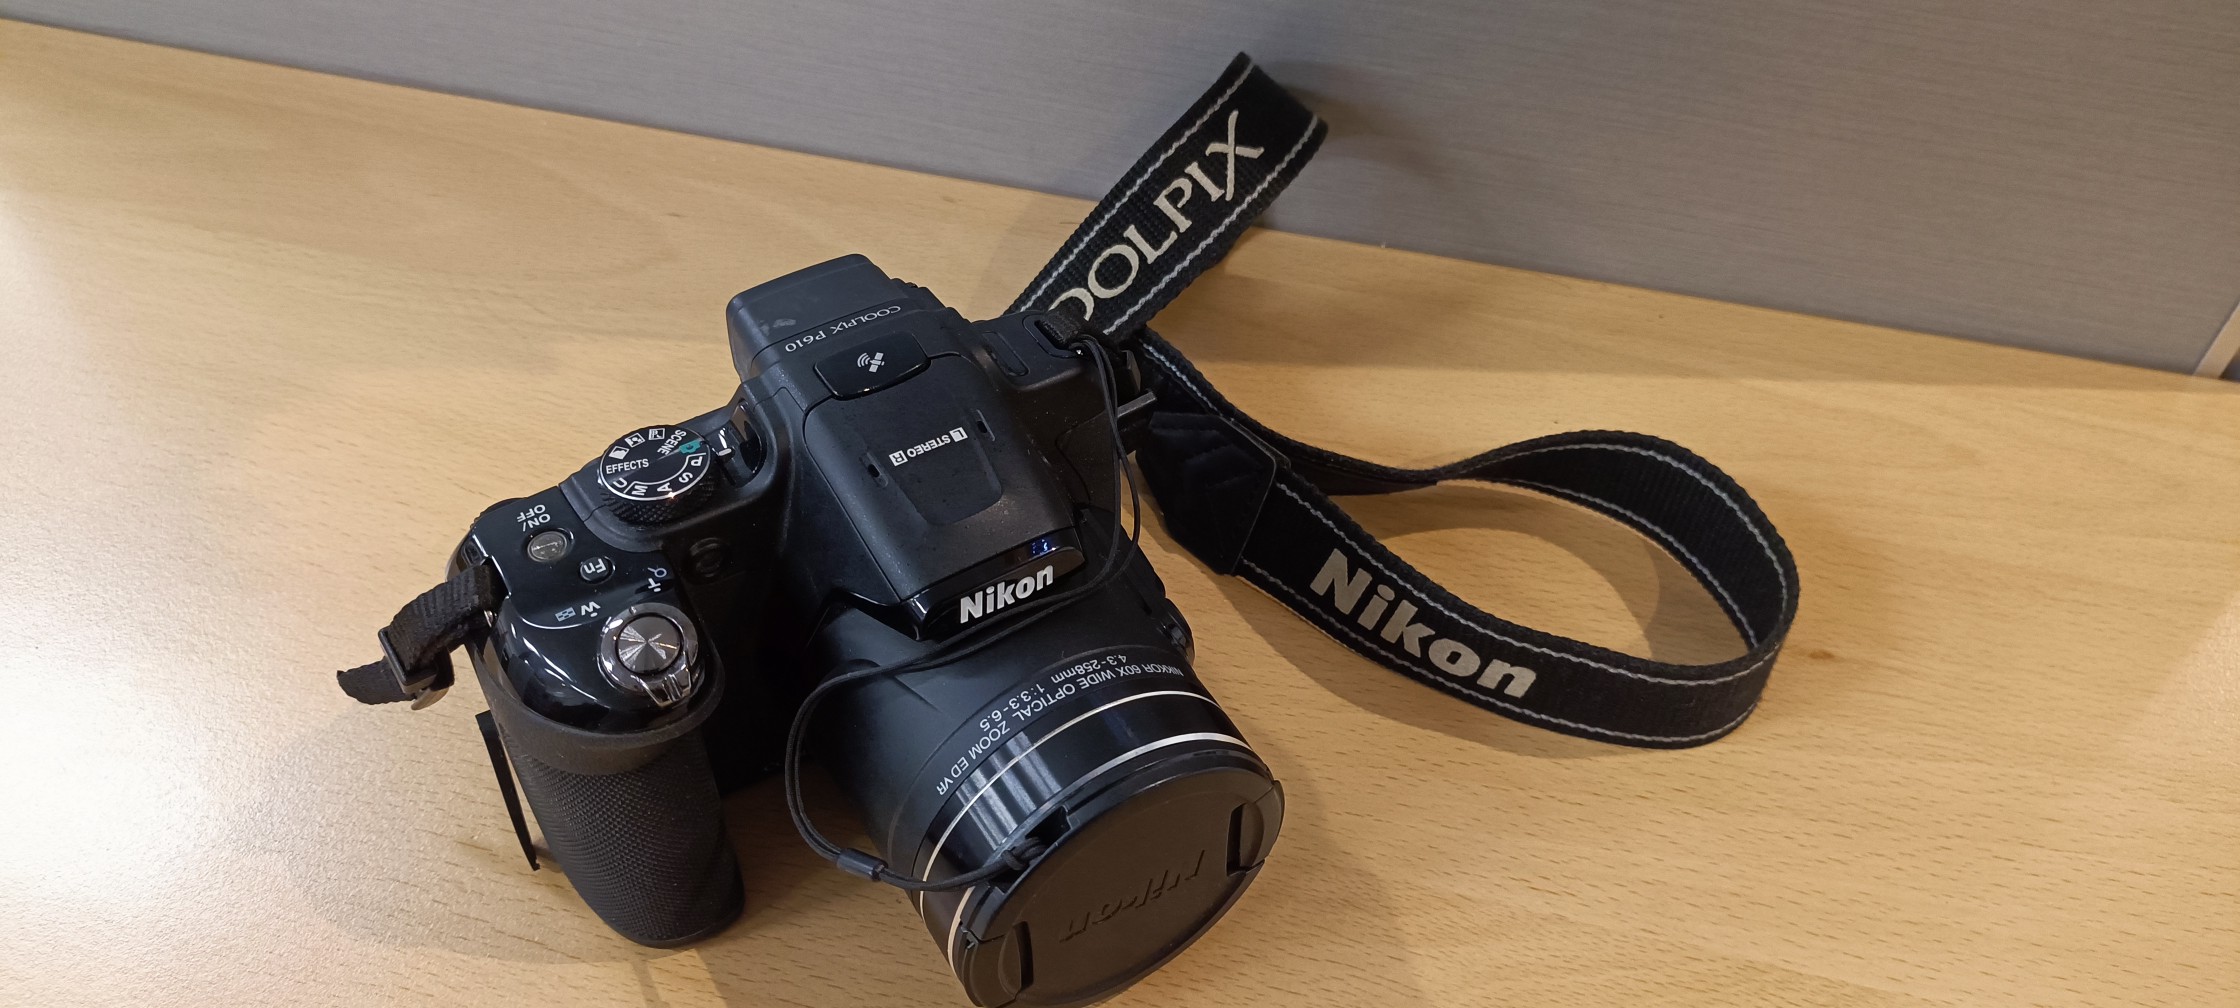 camaras y audio - Nikon Coolpix P610 63x zoom 1440 mm.  Excelentes condiciones